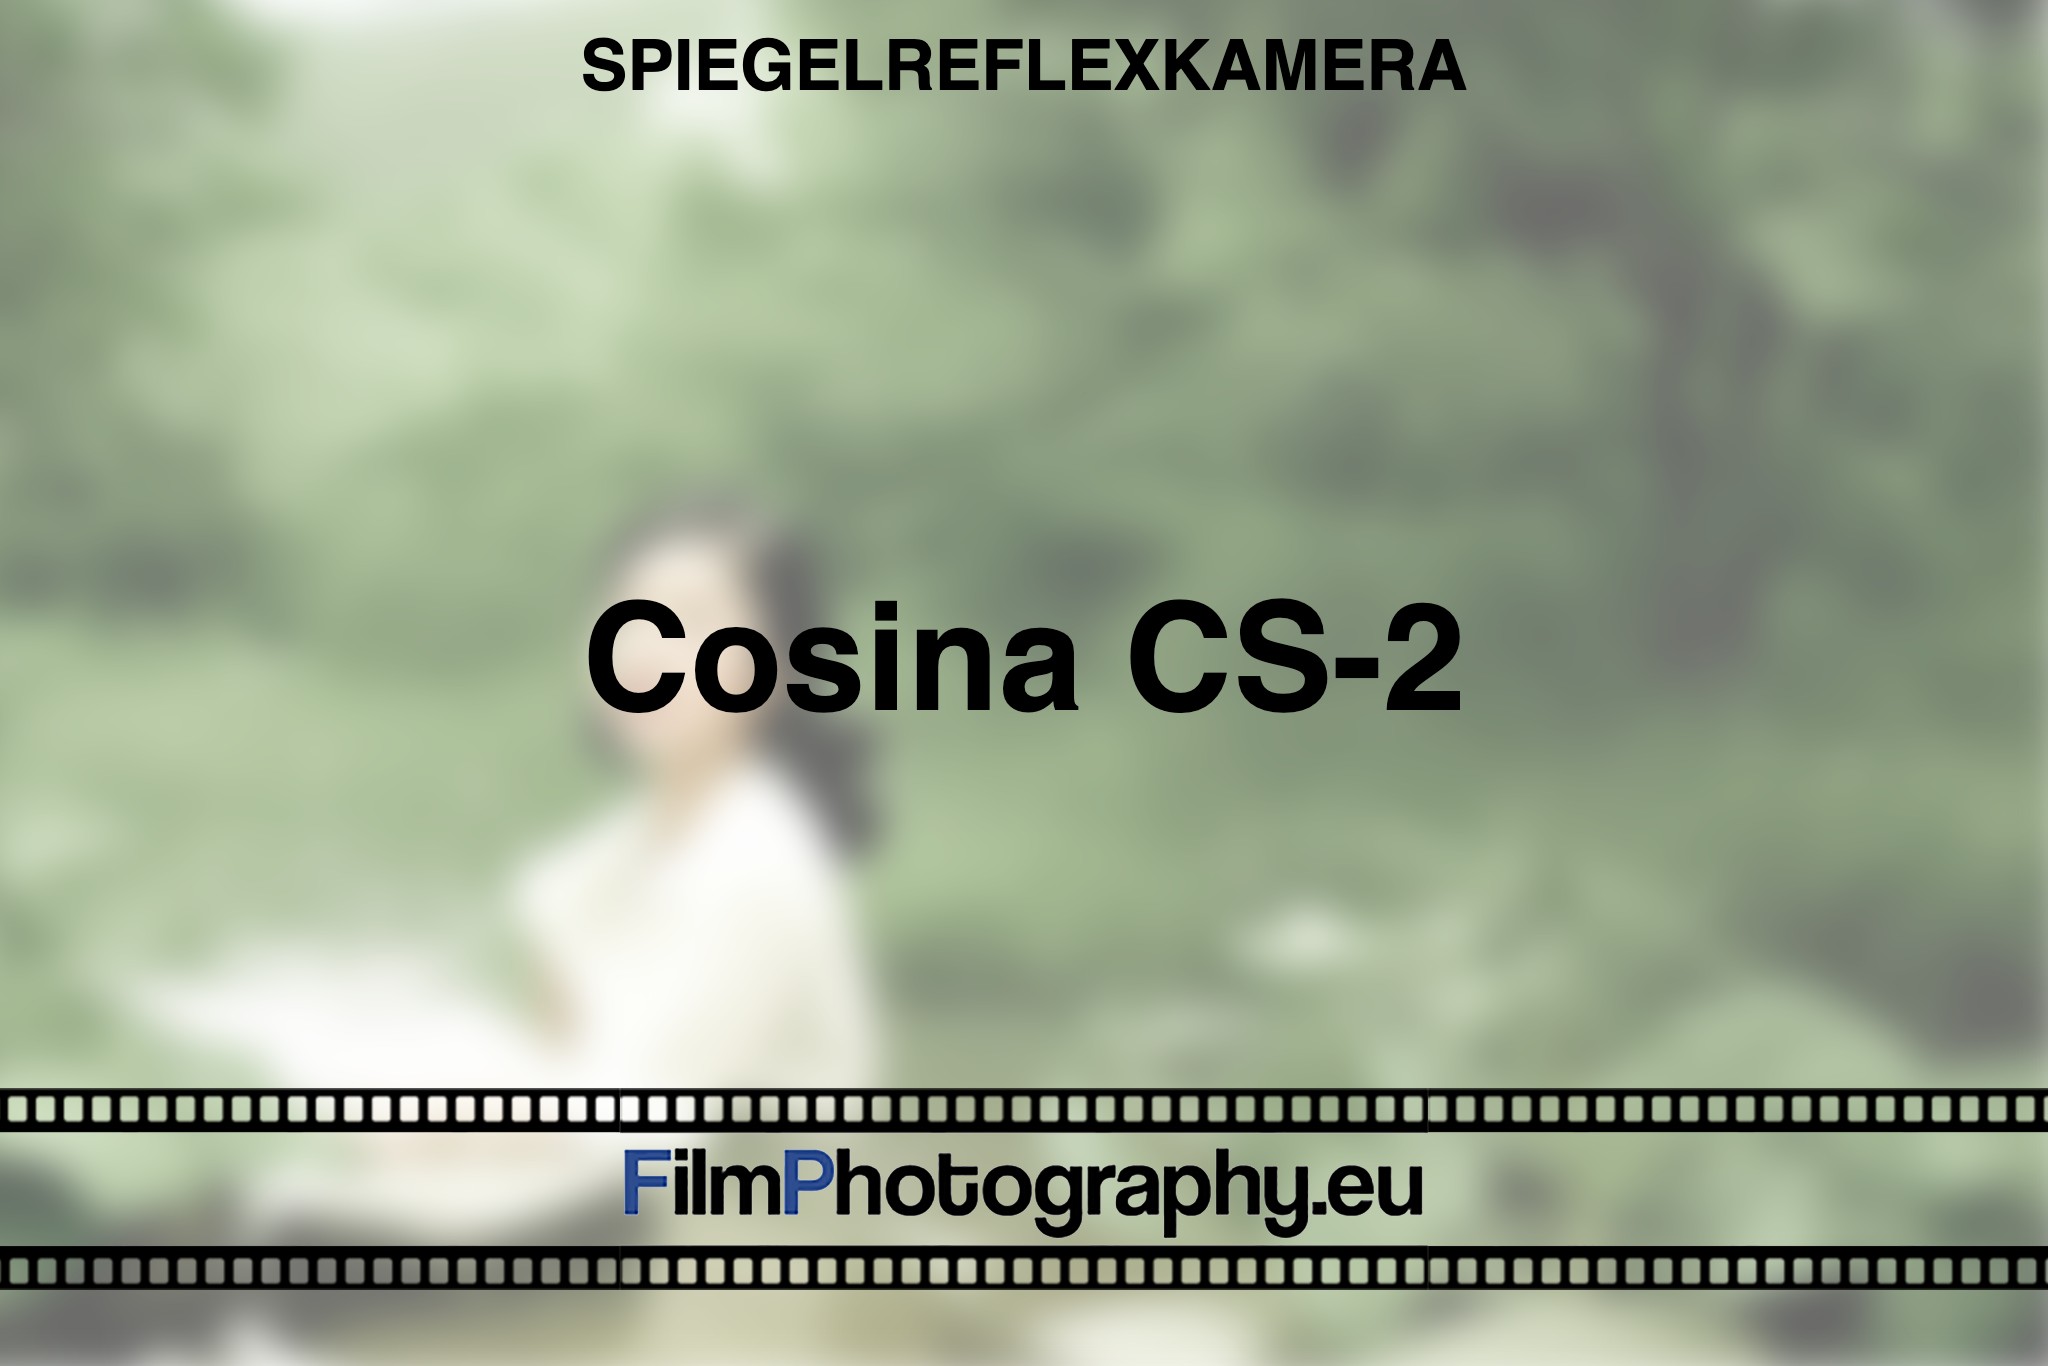 cosina-cs-2-spiegelreflexkamera-bnv